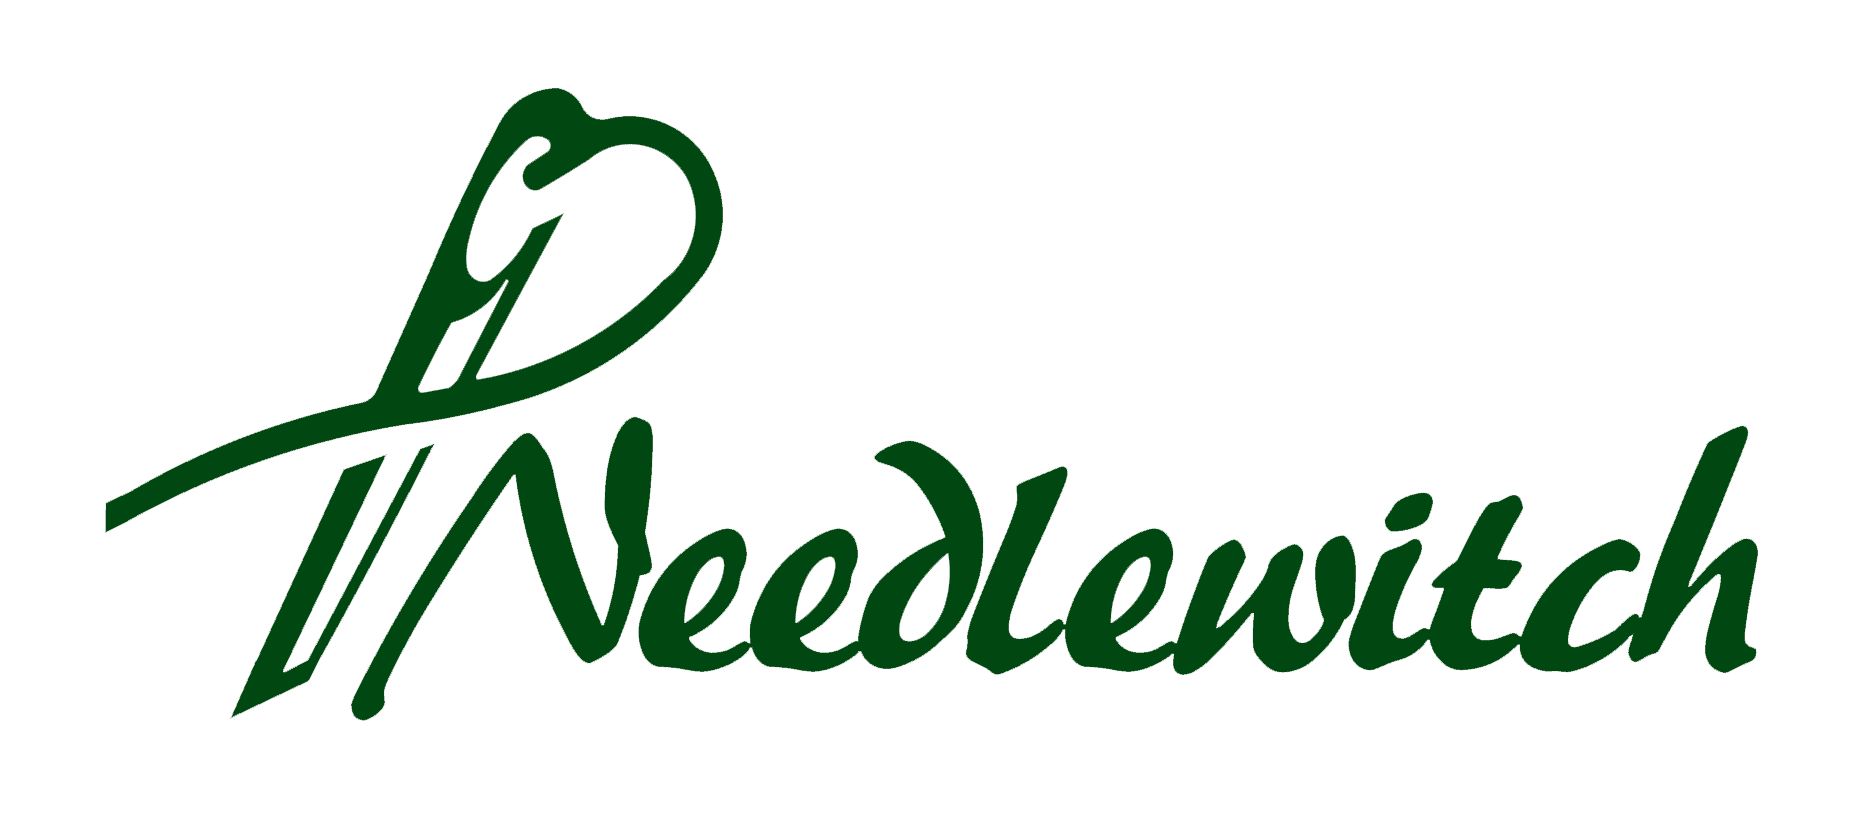 Needlewitch-Needlewitch